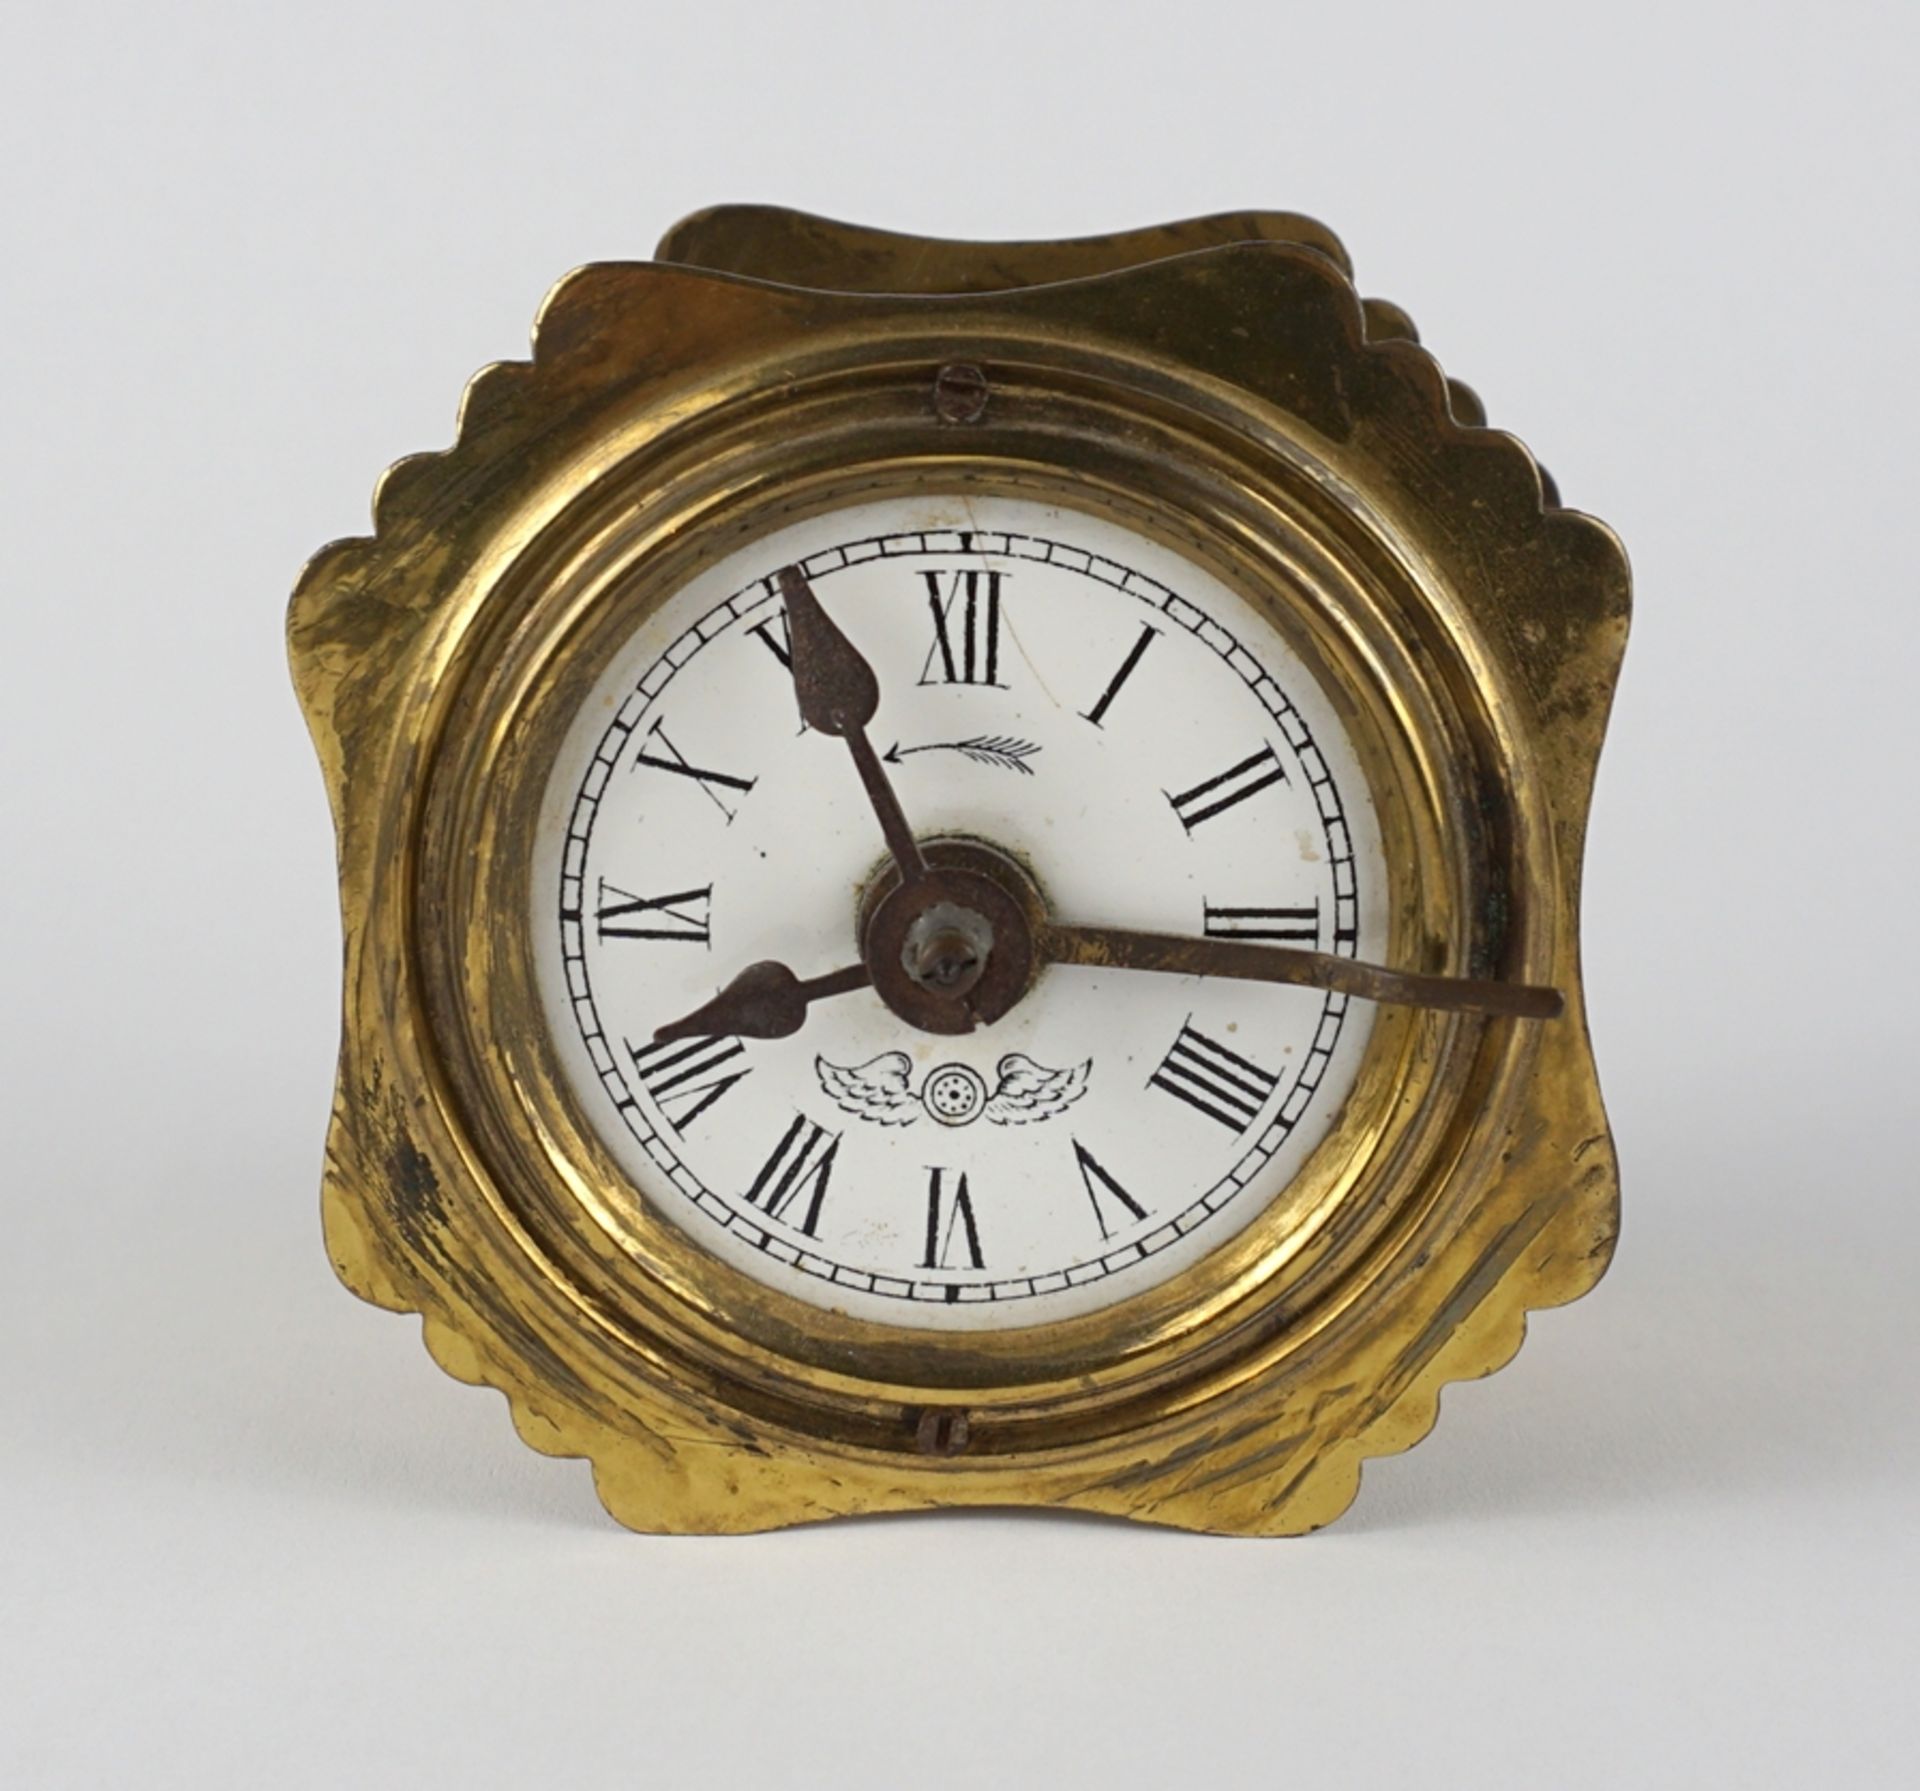 Short pendulum alarm clock, Kienzle, around 1900